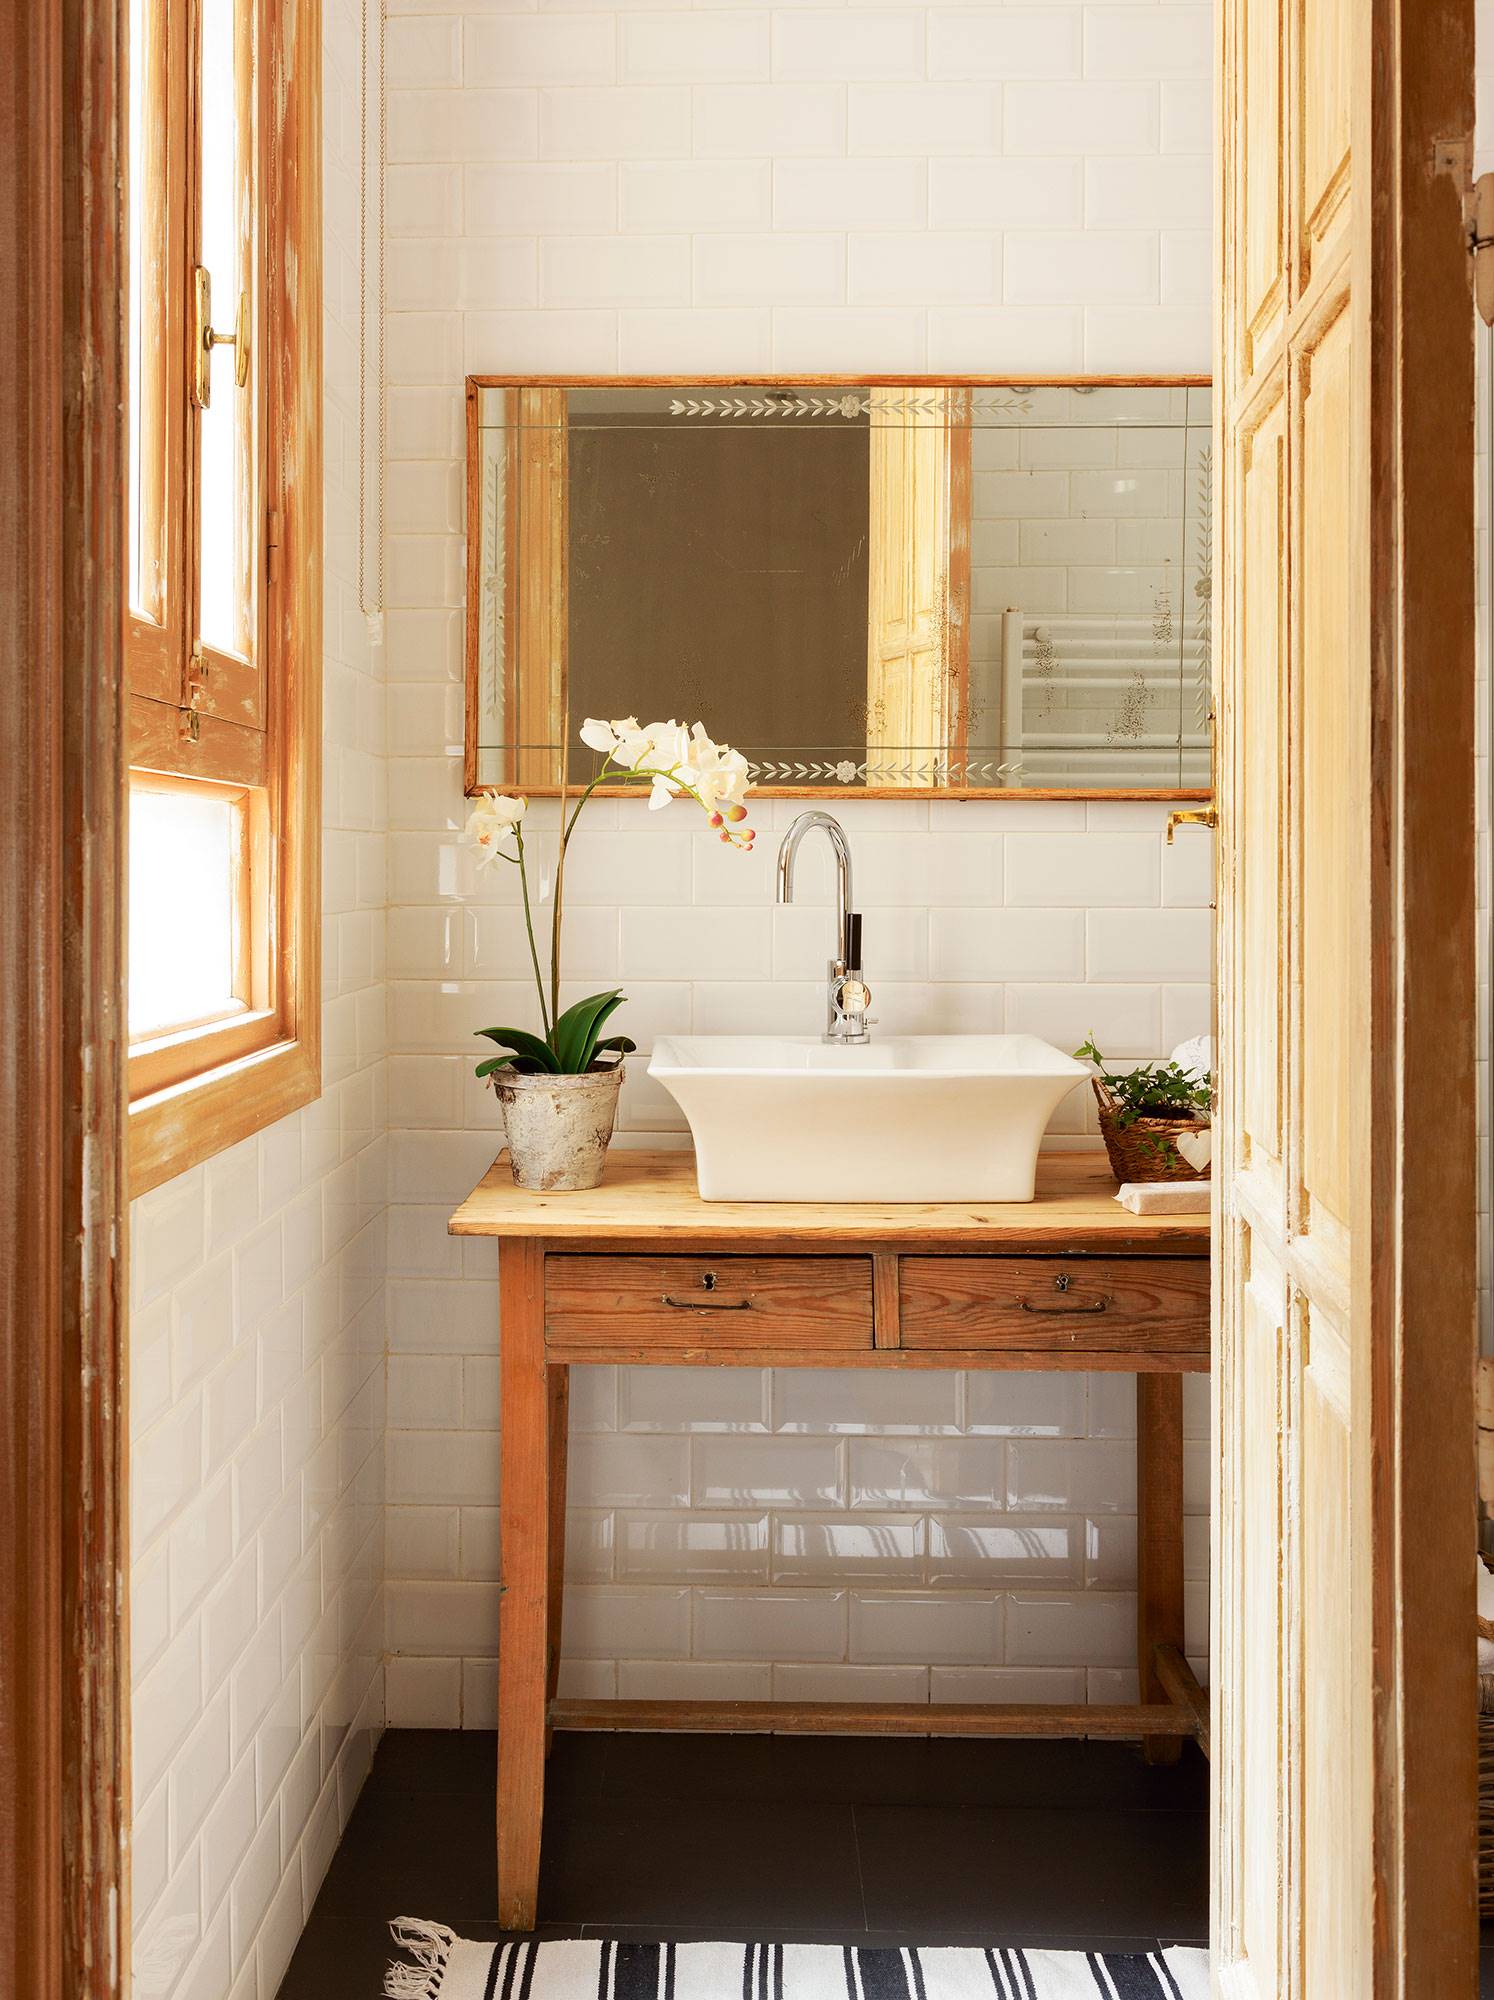 Baño clásico con espejo con marco de madera y planta_00518259